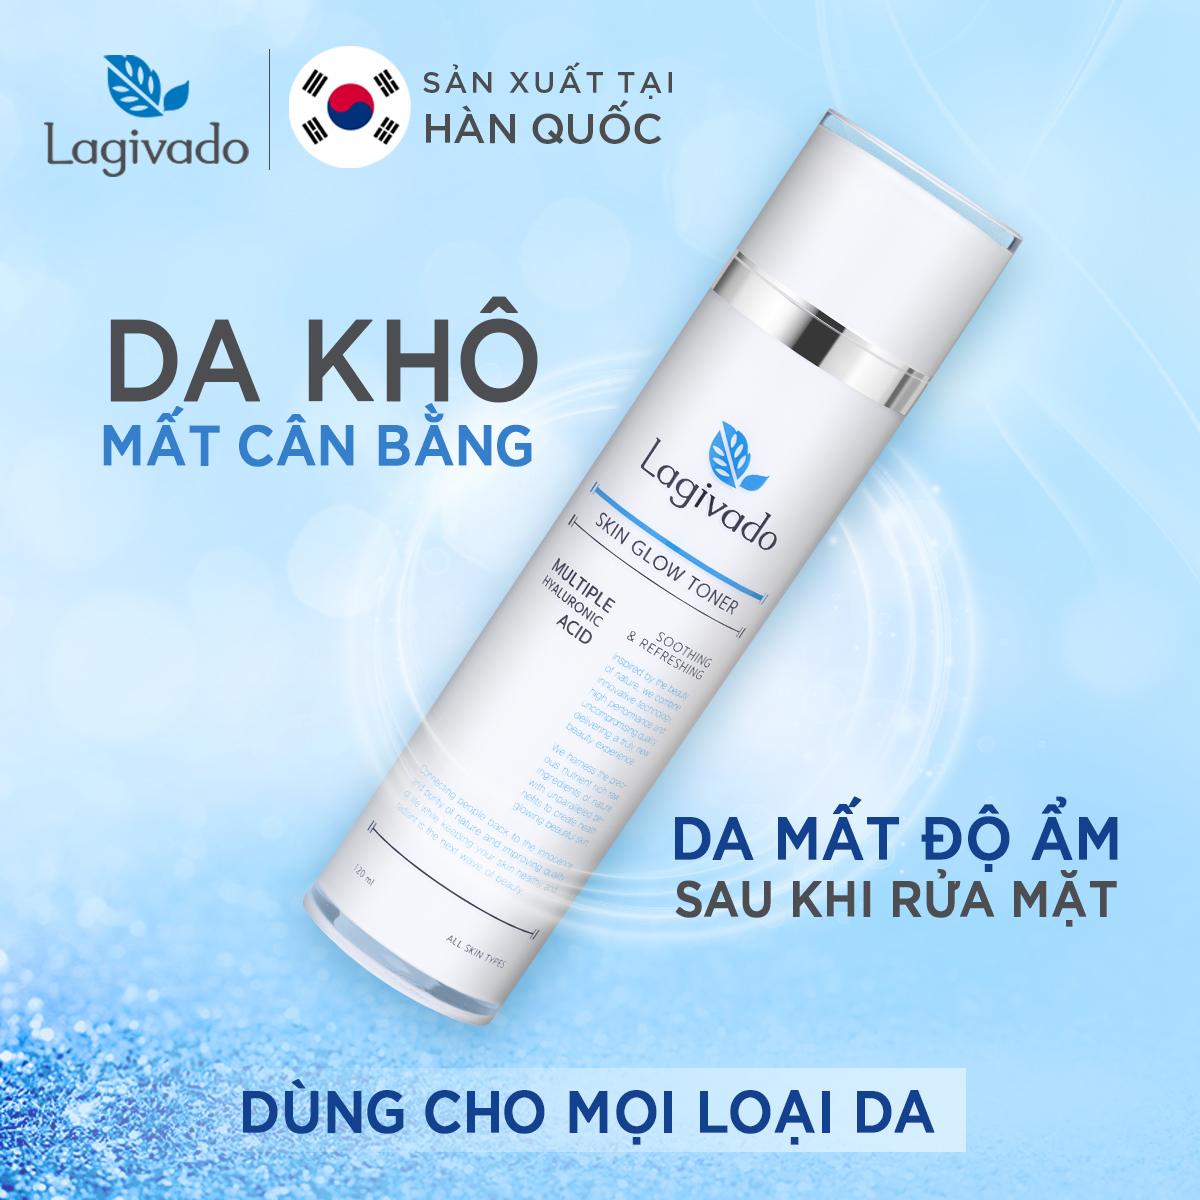 Bộ đôi nước hoa hồng se khít lỗ chân lông Hàn Quốc Lagivado Skin Glow Toner 120 ml và sữa rửa mặt Creamy Foam 50ml